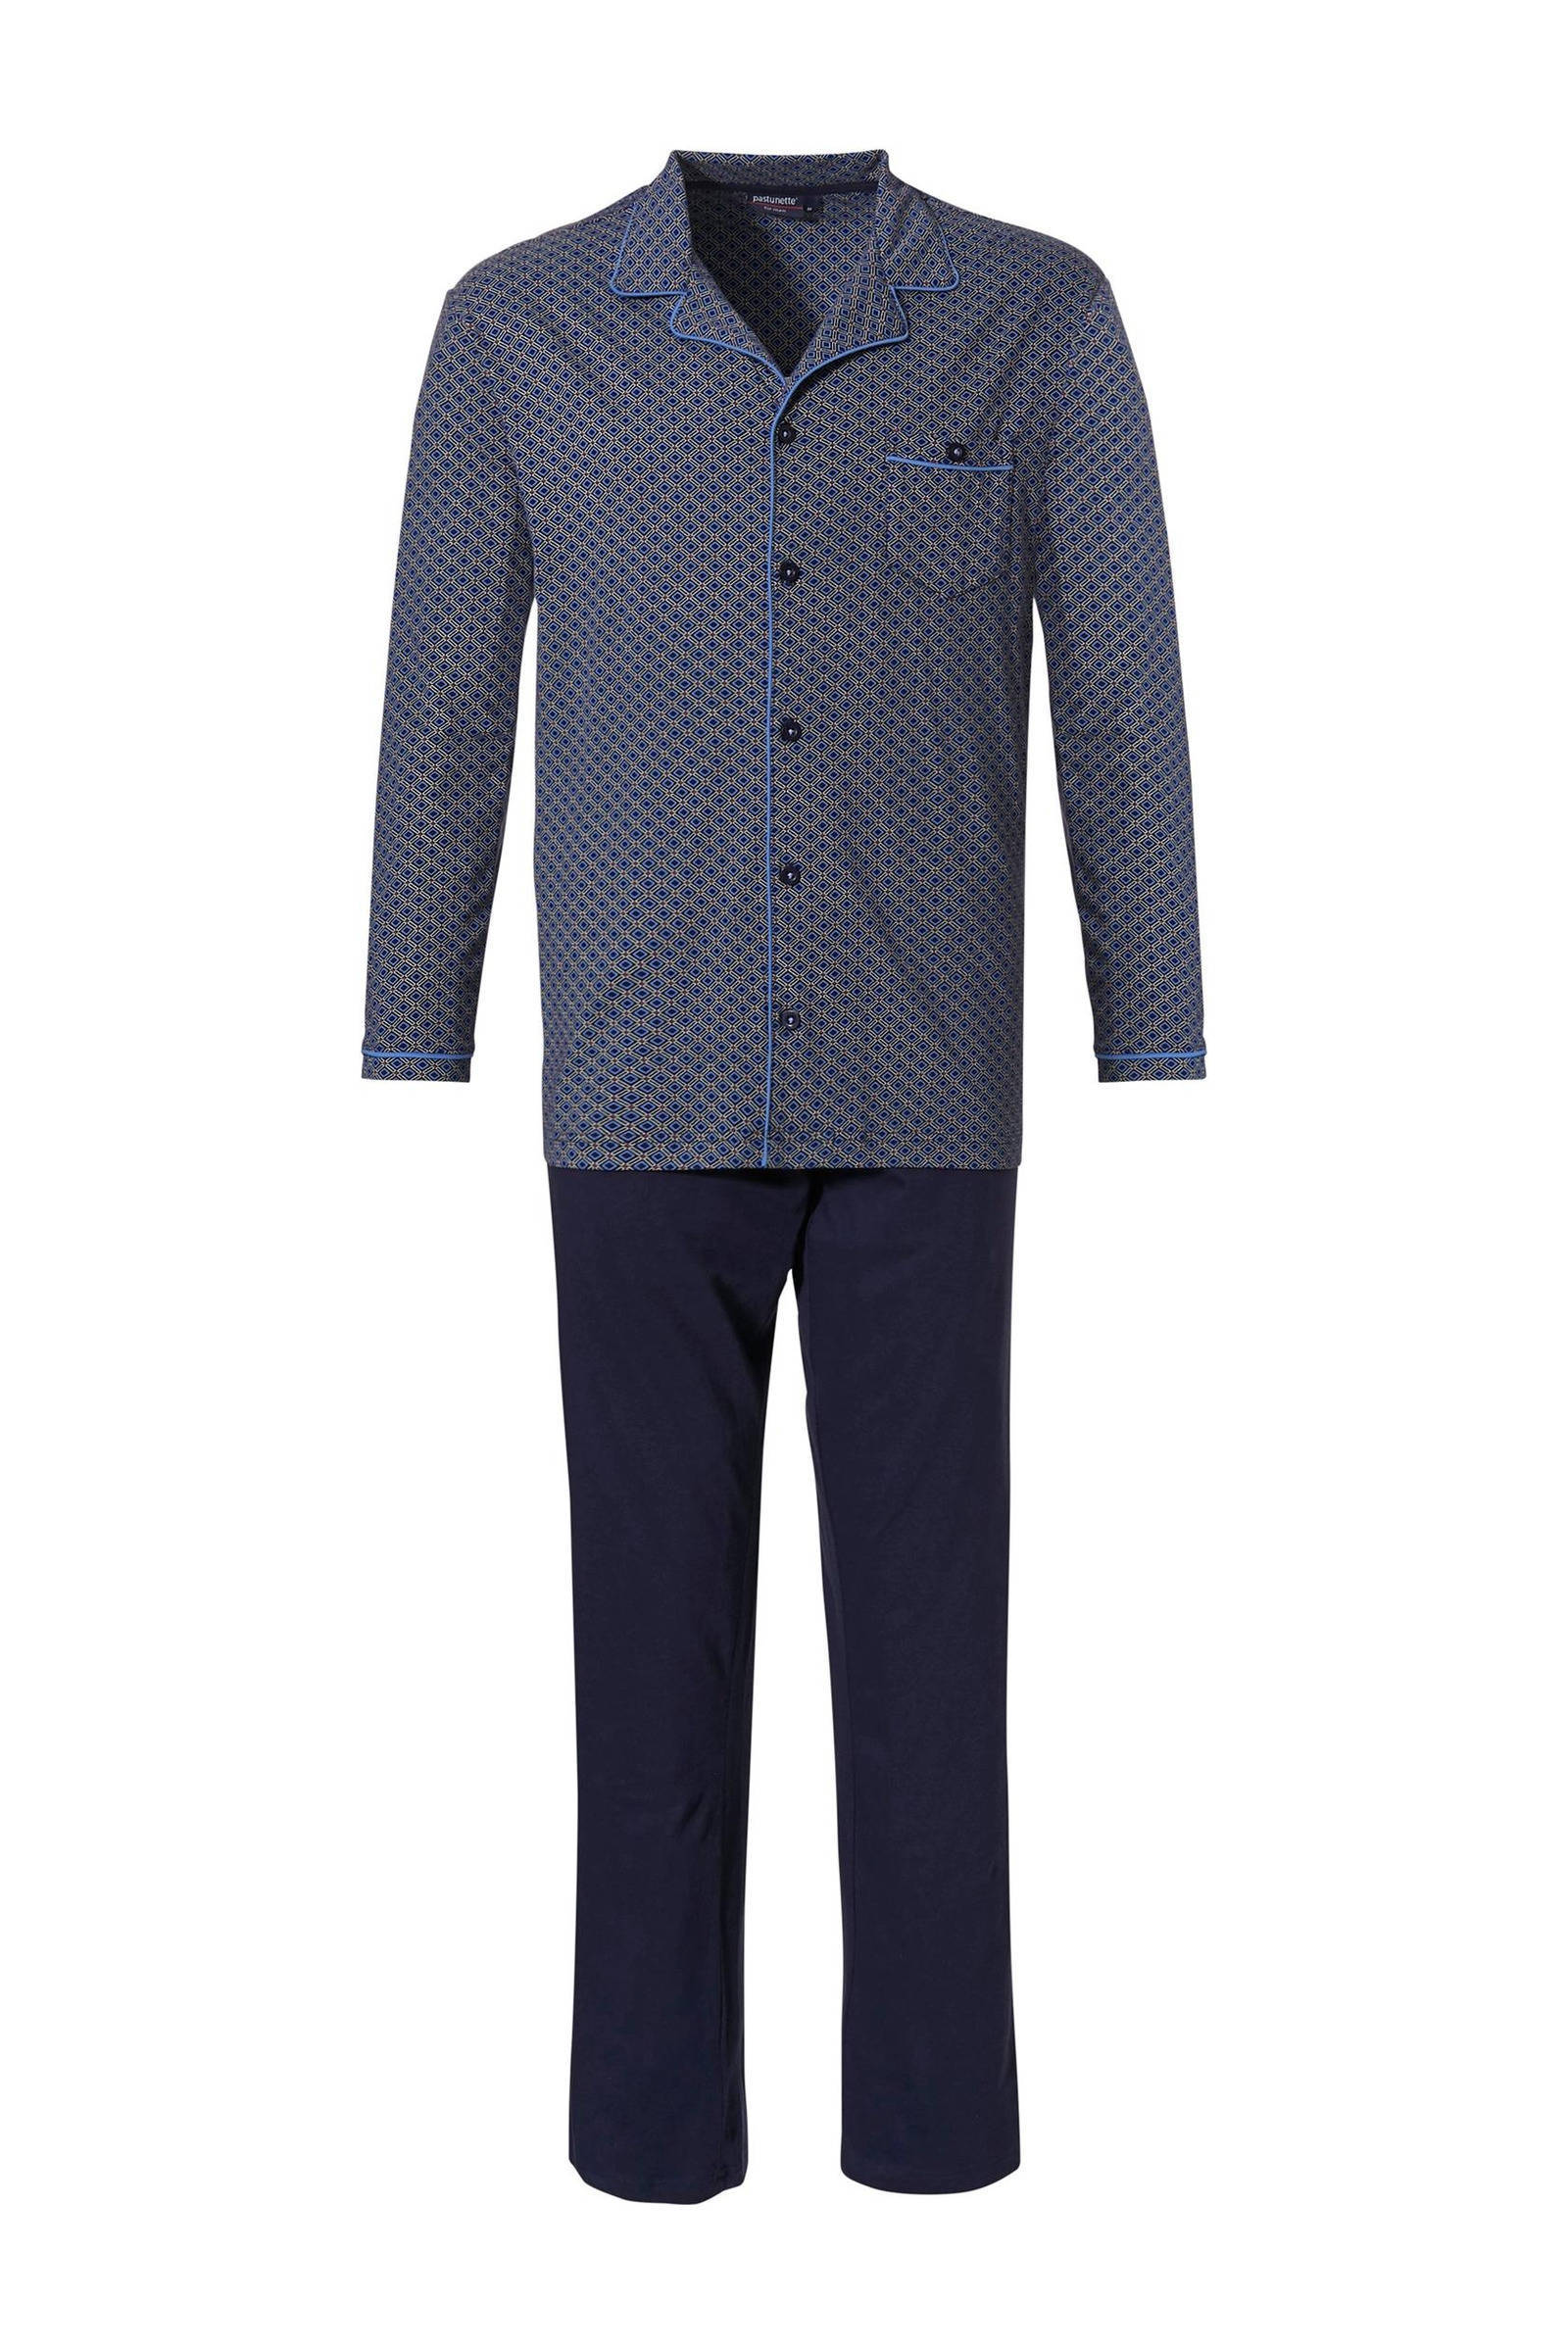 Pastunette Heren doorknoop pyjama 23212 600 6 Blauw XL/54 online kopen